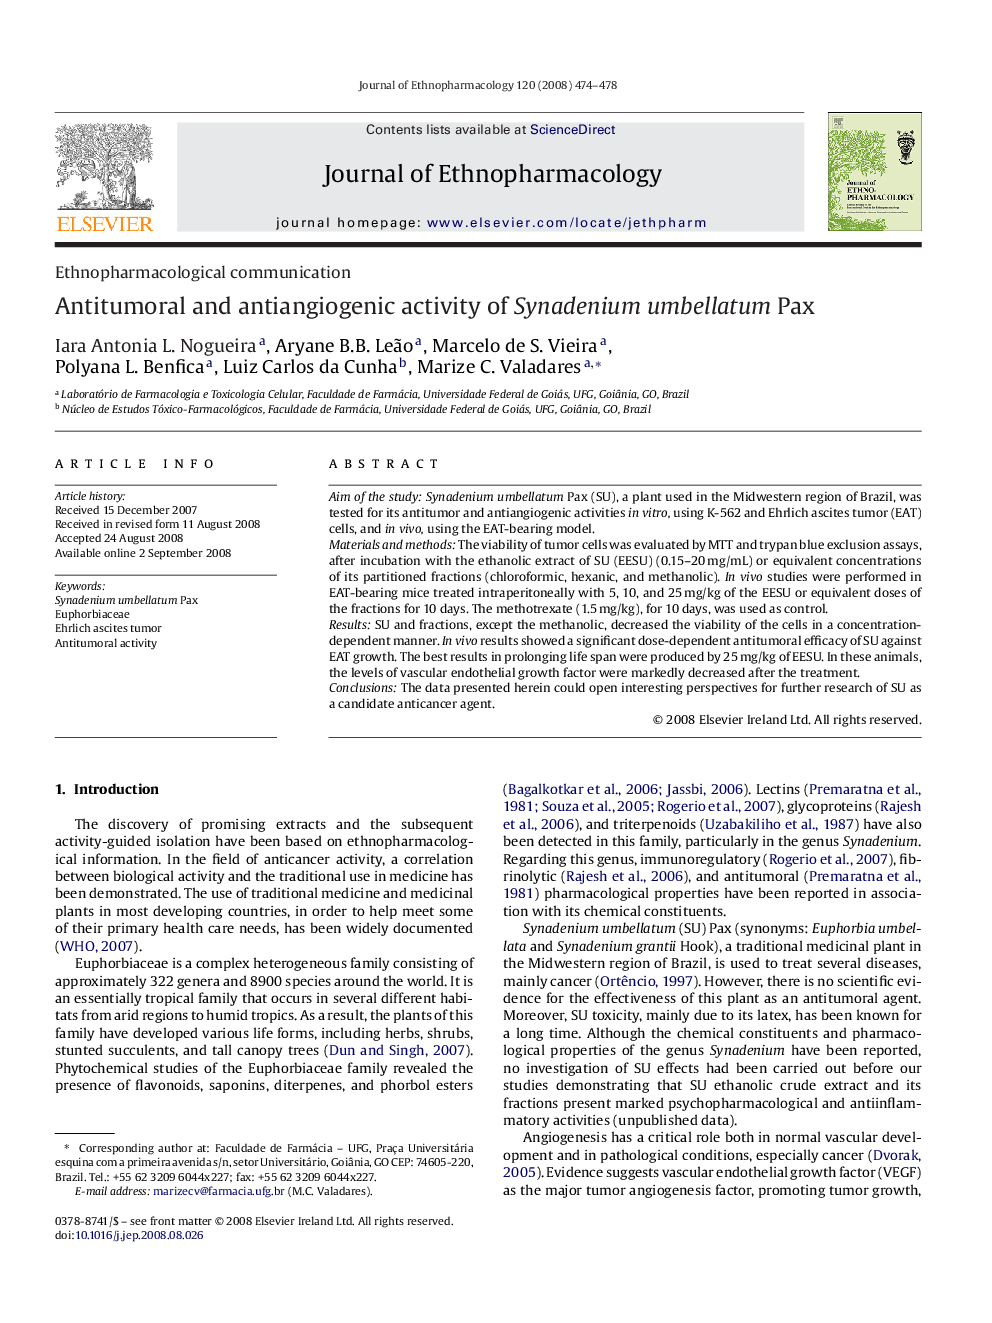 Antitumoral and antiangiogenic activity of Synadenium umbellatum Pax